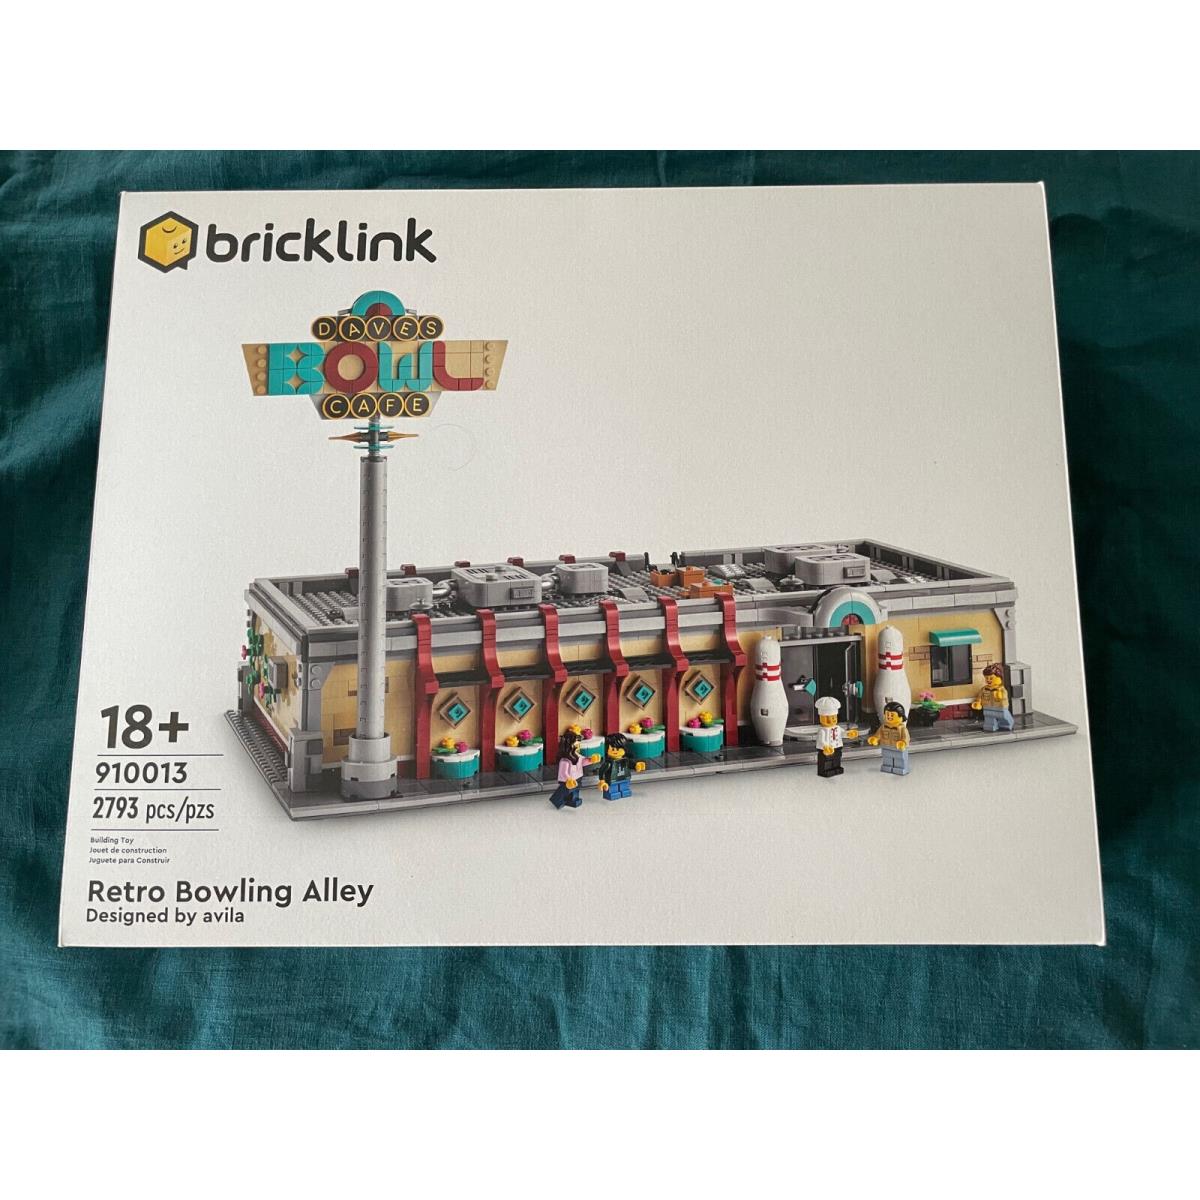 Lego Bricklink 910013 Retro Bowling Alley